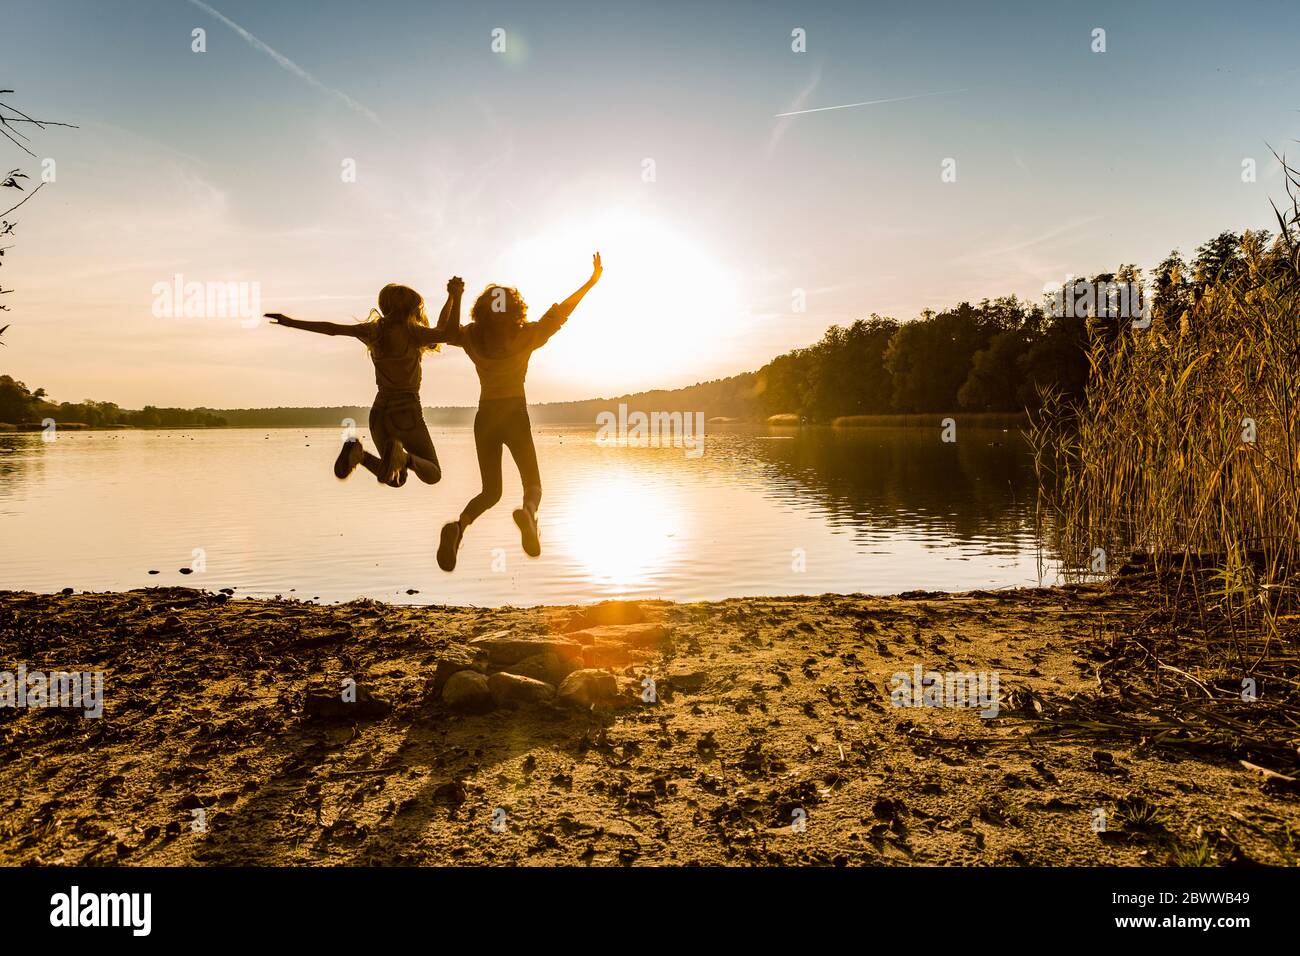 Freunde springen in der Luft am Seeufer gegen den Himmel während des Sonnenuntergangs Stockfoto